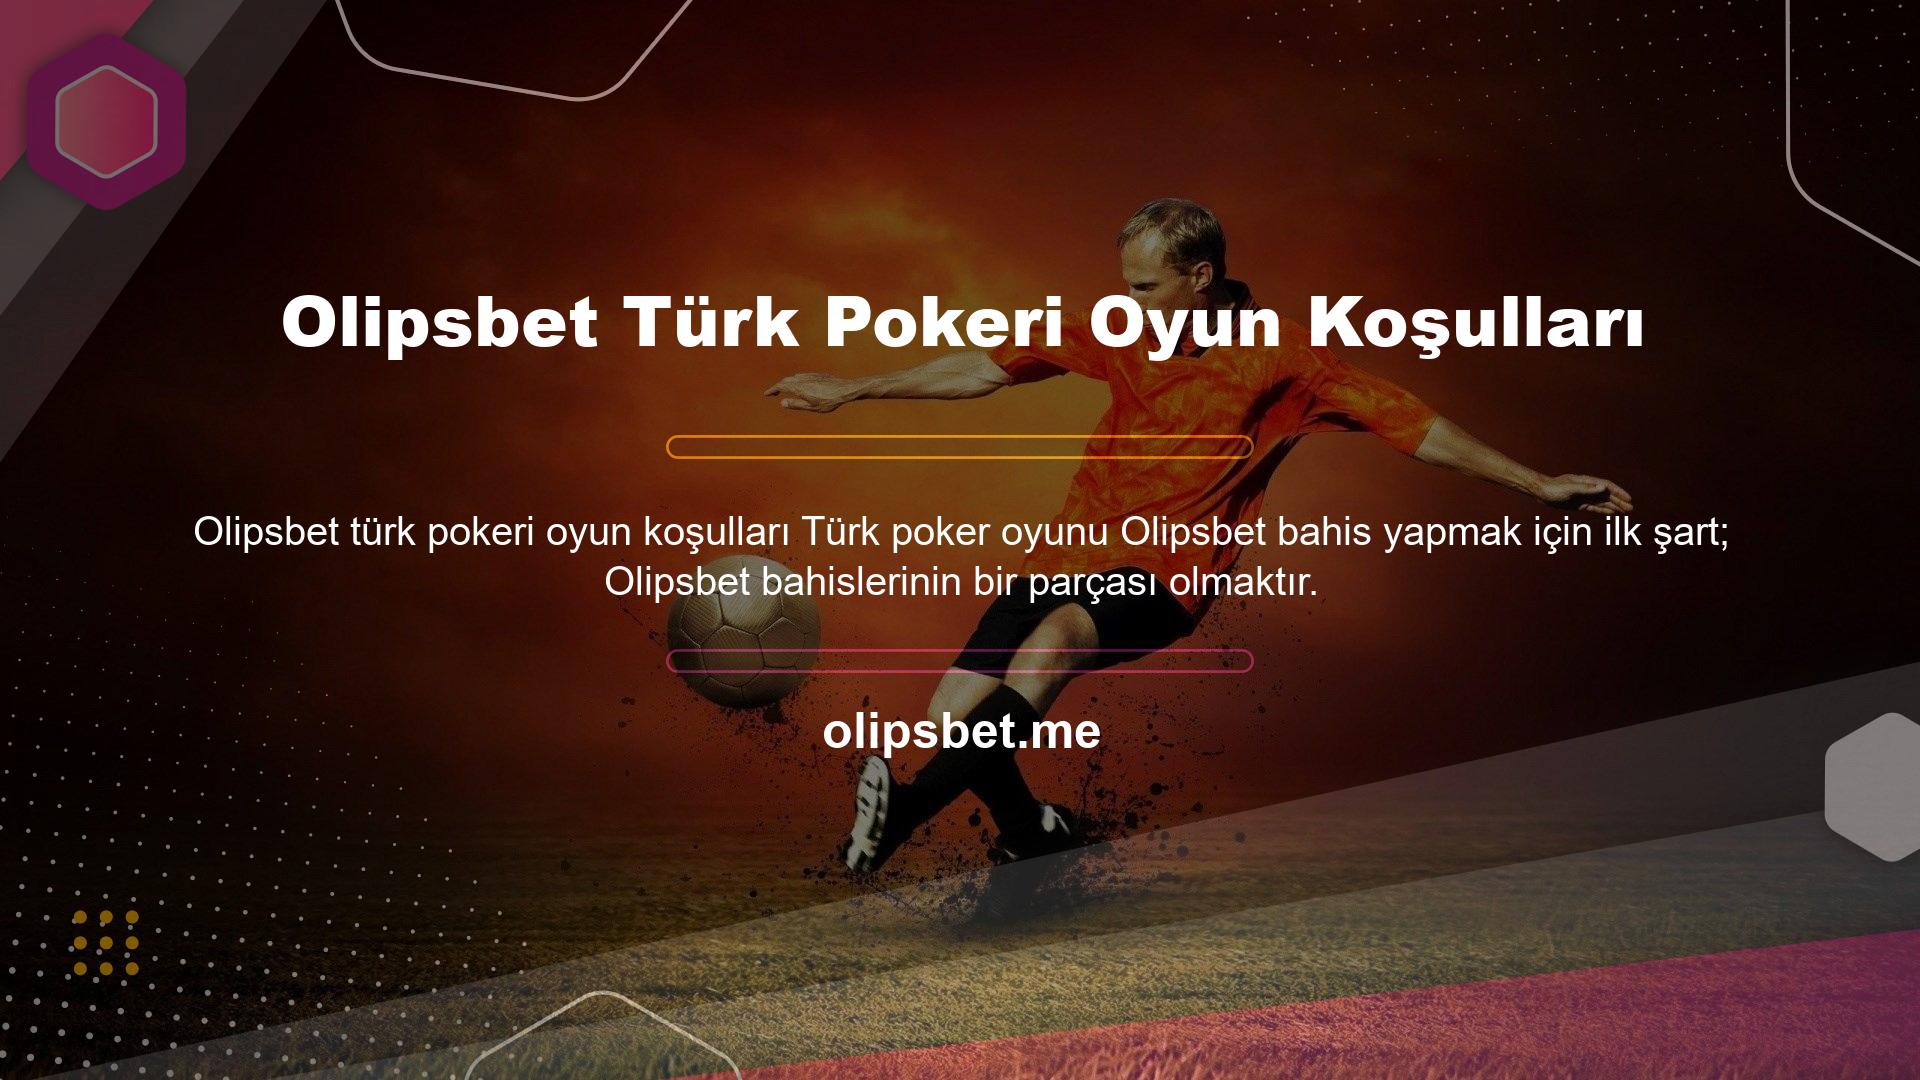 Olipsbet Türk Pokeri Oyun Koşulları